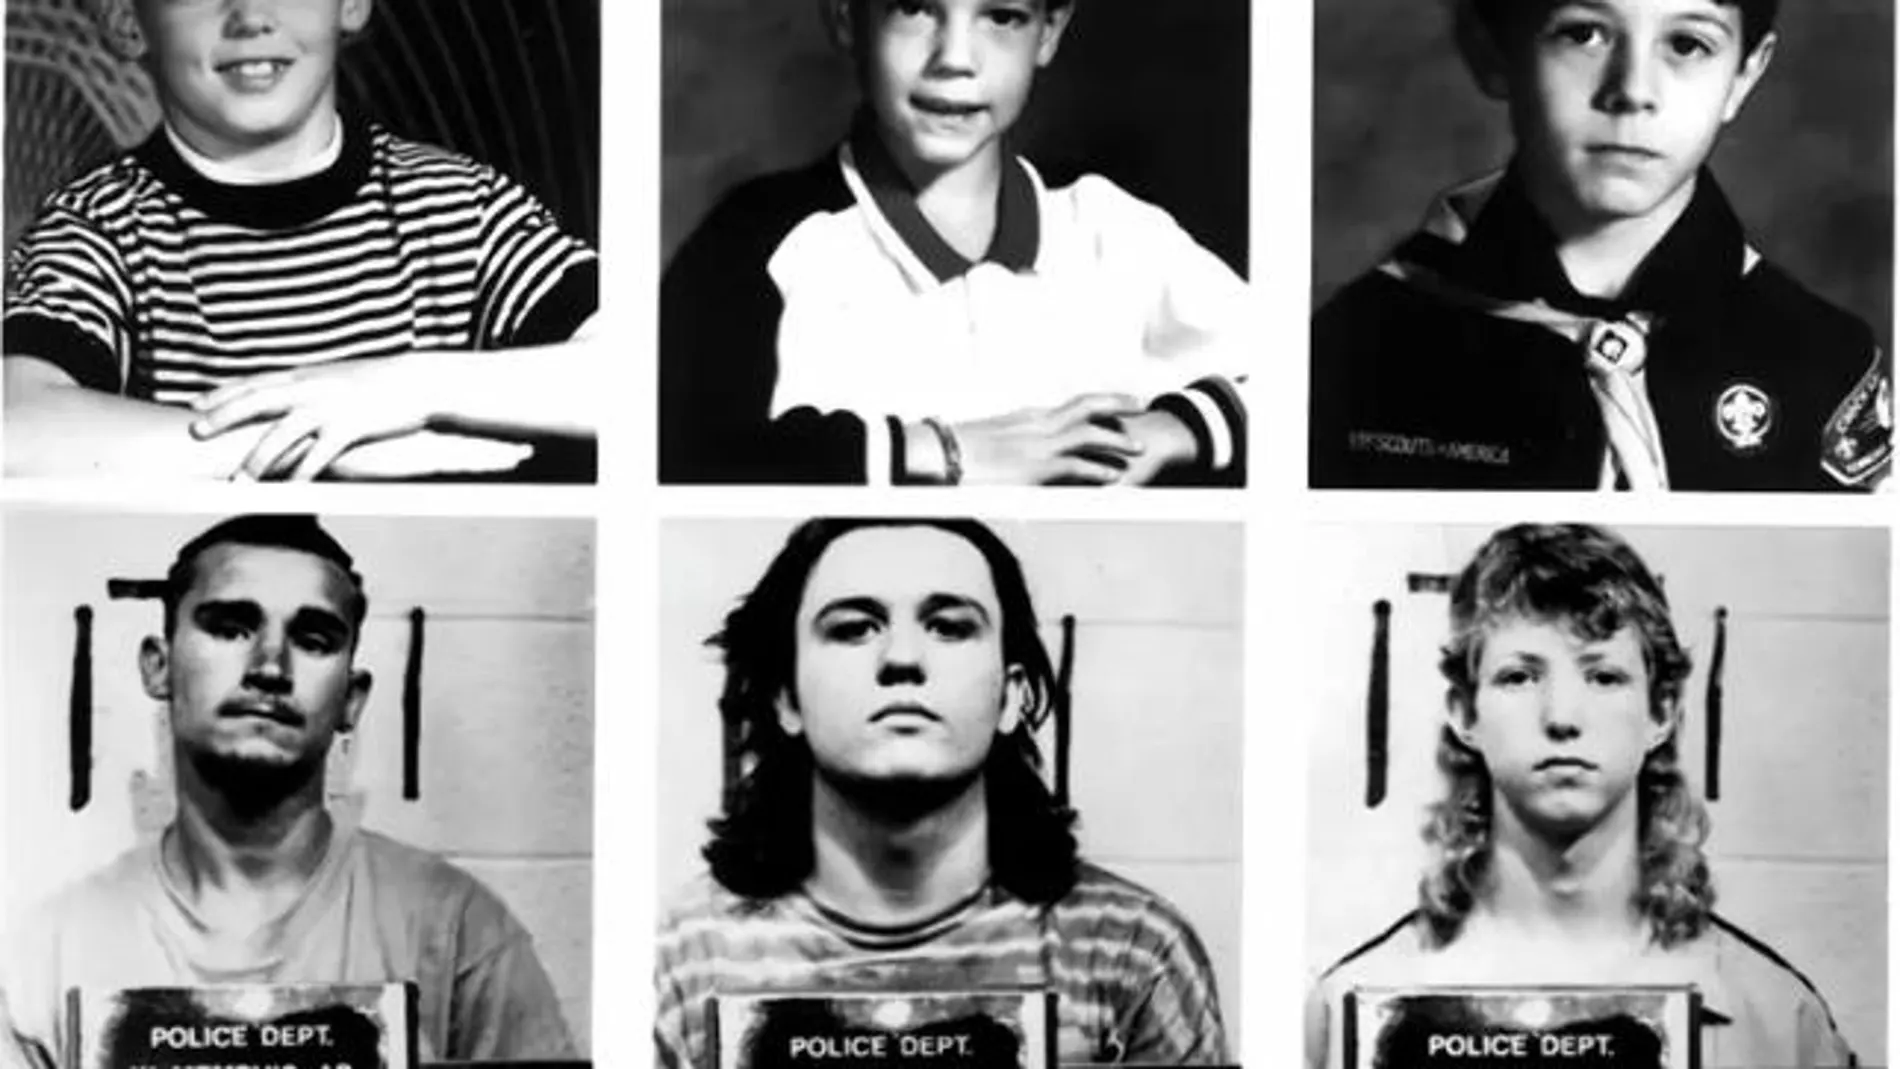 Collage con las imágenes de los tres niños asesinados y de los tres jóvenes juzgados y condenados de manera injusta por el crimen